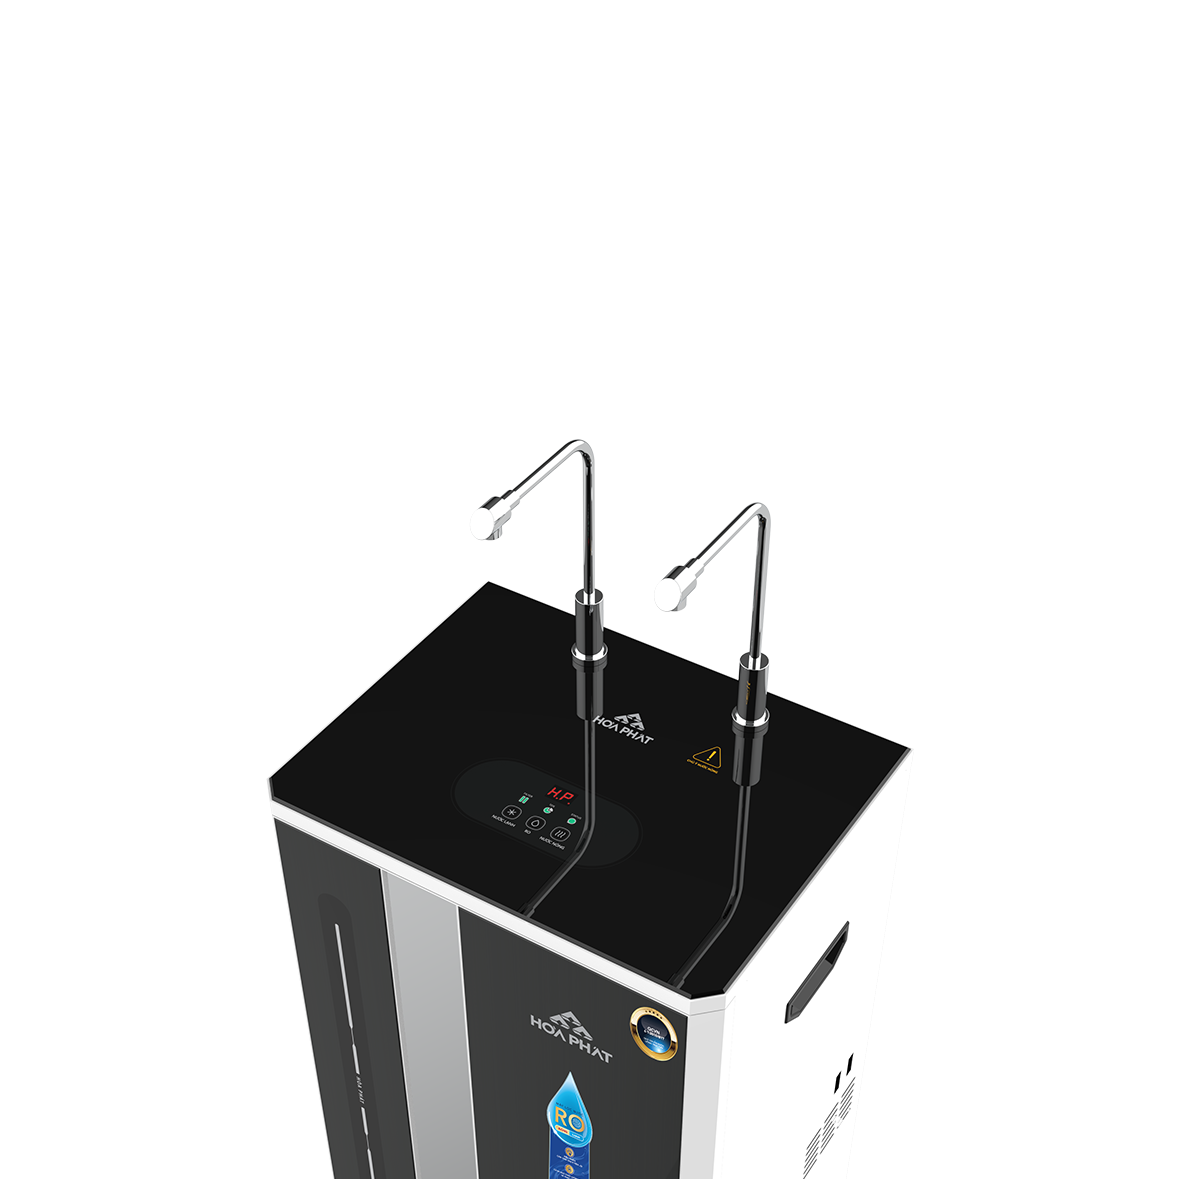 Máy lọc nước RO nóng lạnh Hòa Phát HWBR4B1021T - đạt chuẩn uống trực tiếp tại vòi - bảo hành 36 tháng - Hàng Chính Hãng